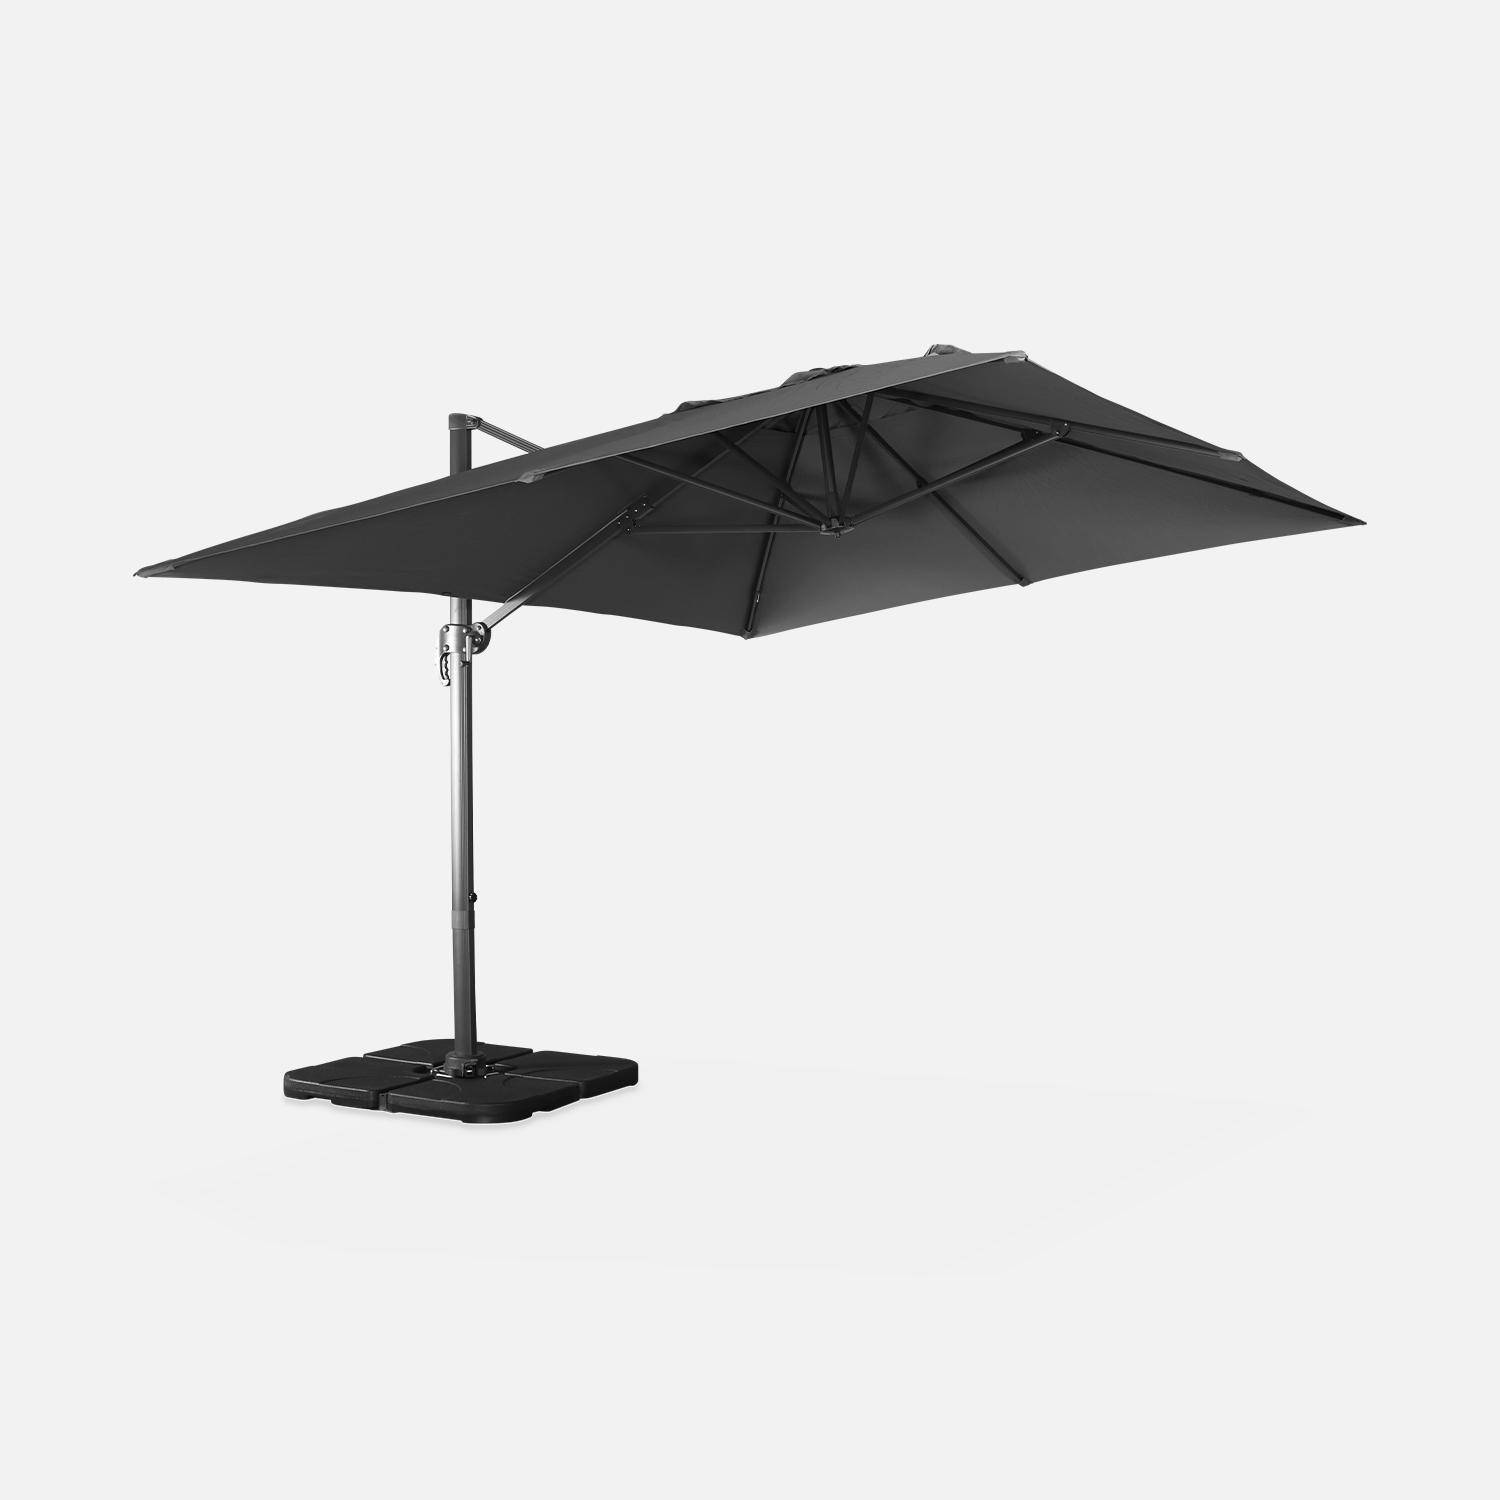 Grijze rechthoekige parasol 3x4m + verzwaarde tegels 50x50cm,sweeek,Photo5